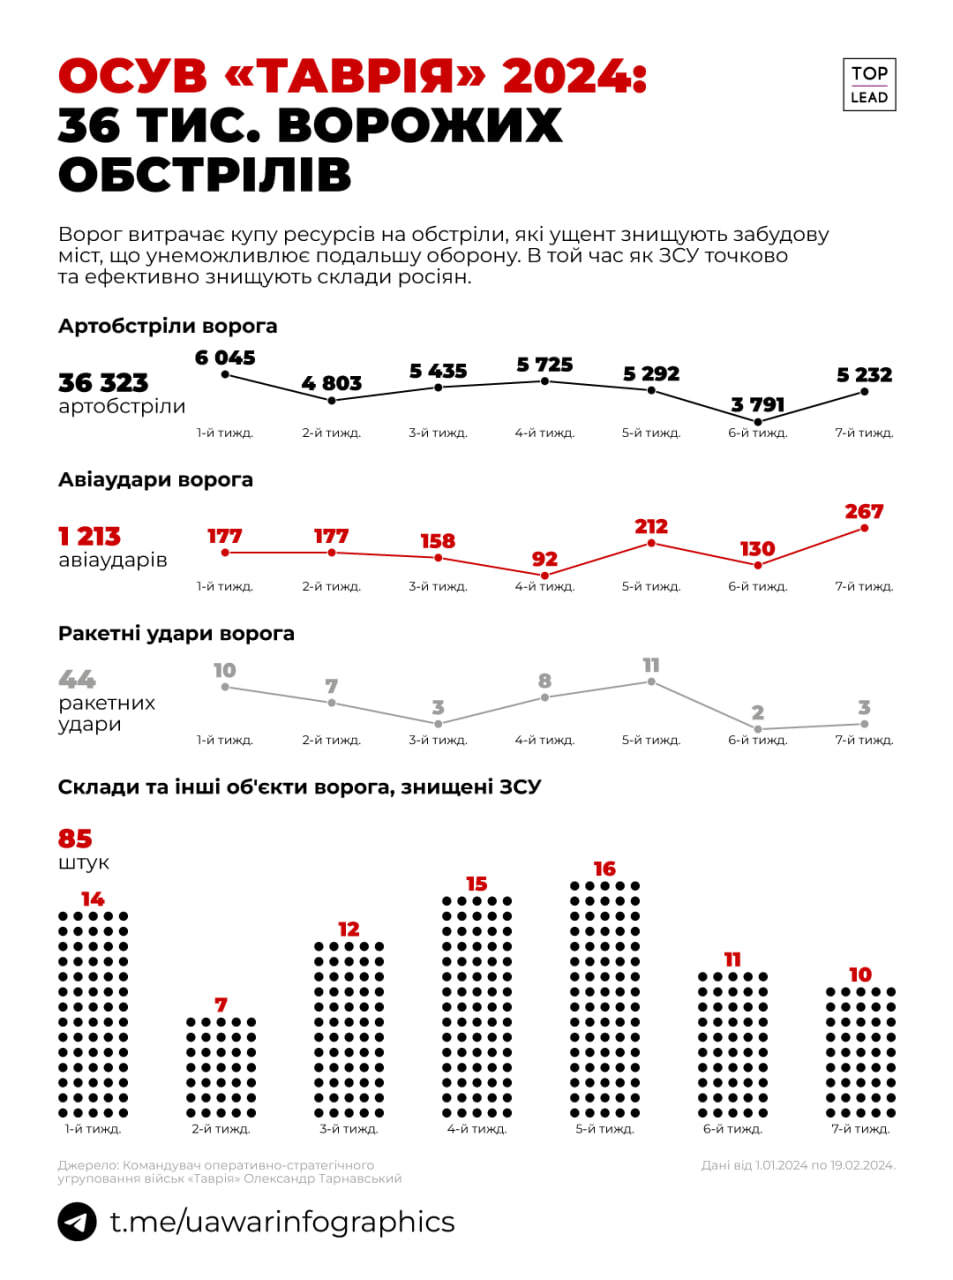 Понад 36 000 артилерійських обстрілів здійснили росіяни з початку року на одному лише Таврійському напрямку